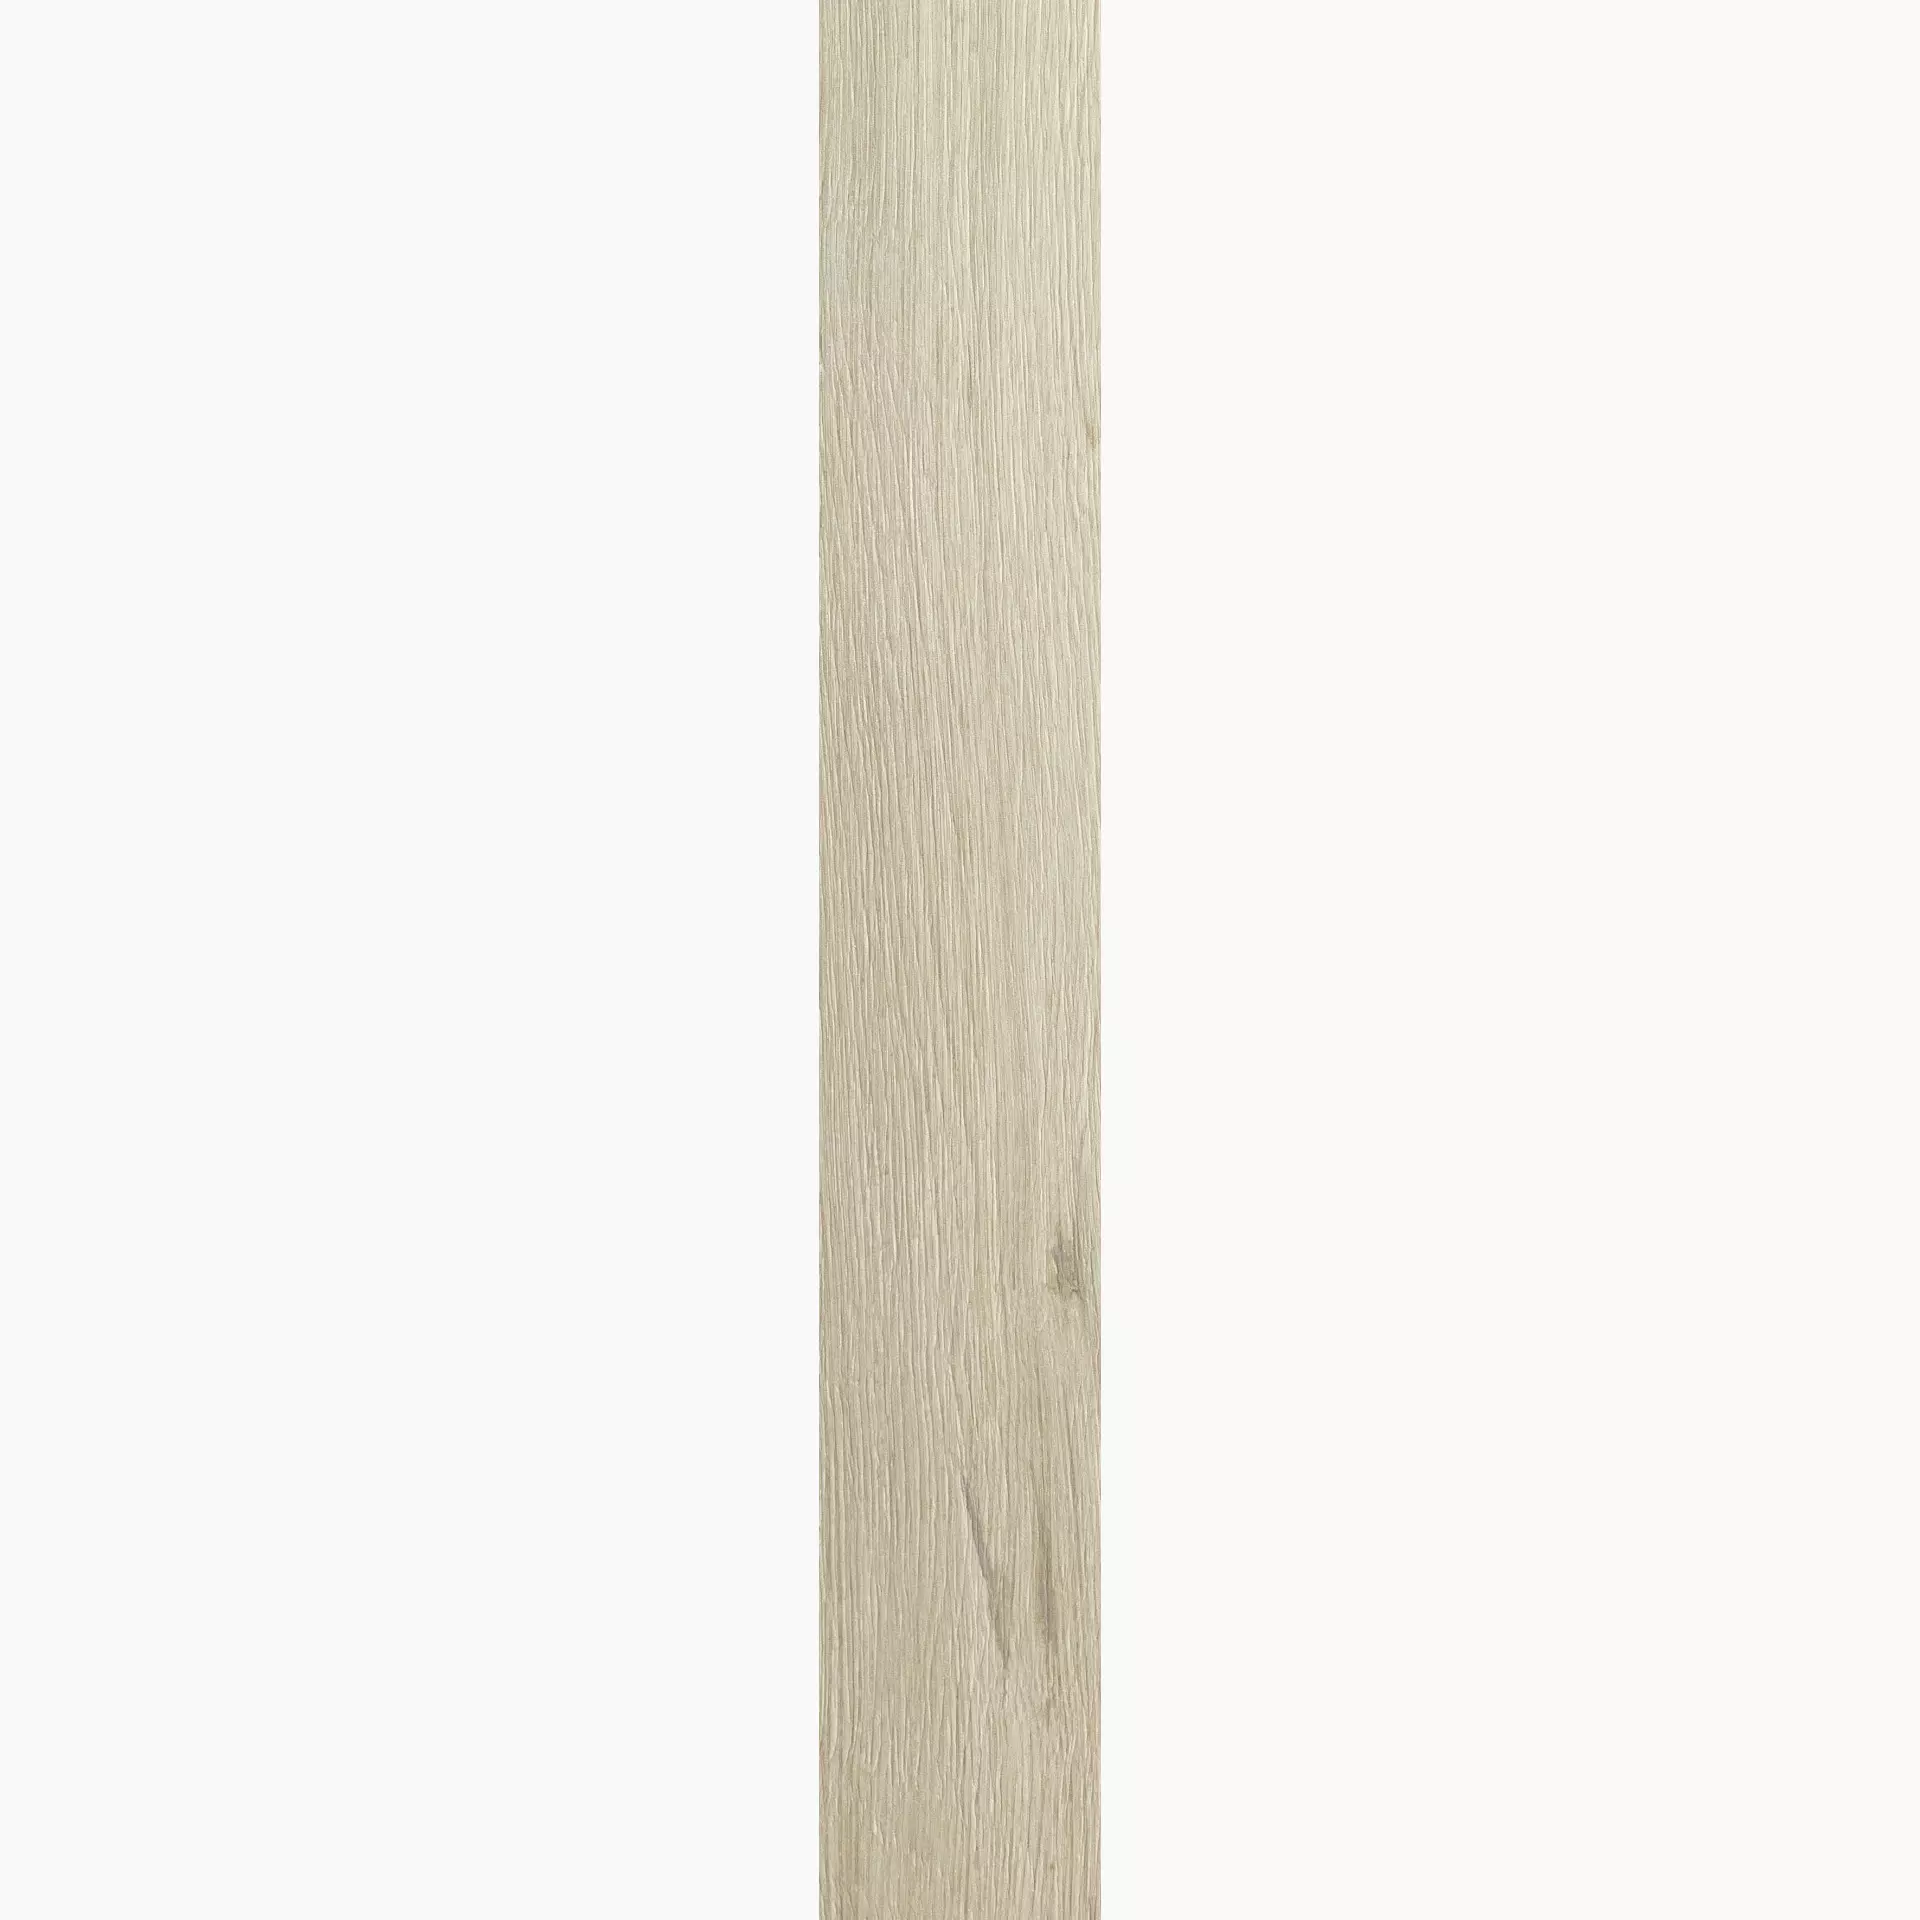 Florim Planches De Rex Amande Naturale – Matt 755693 26,5x180cm rectified 9mm